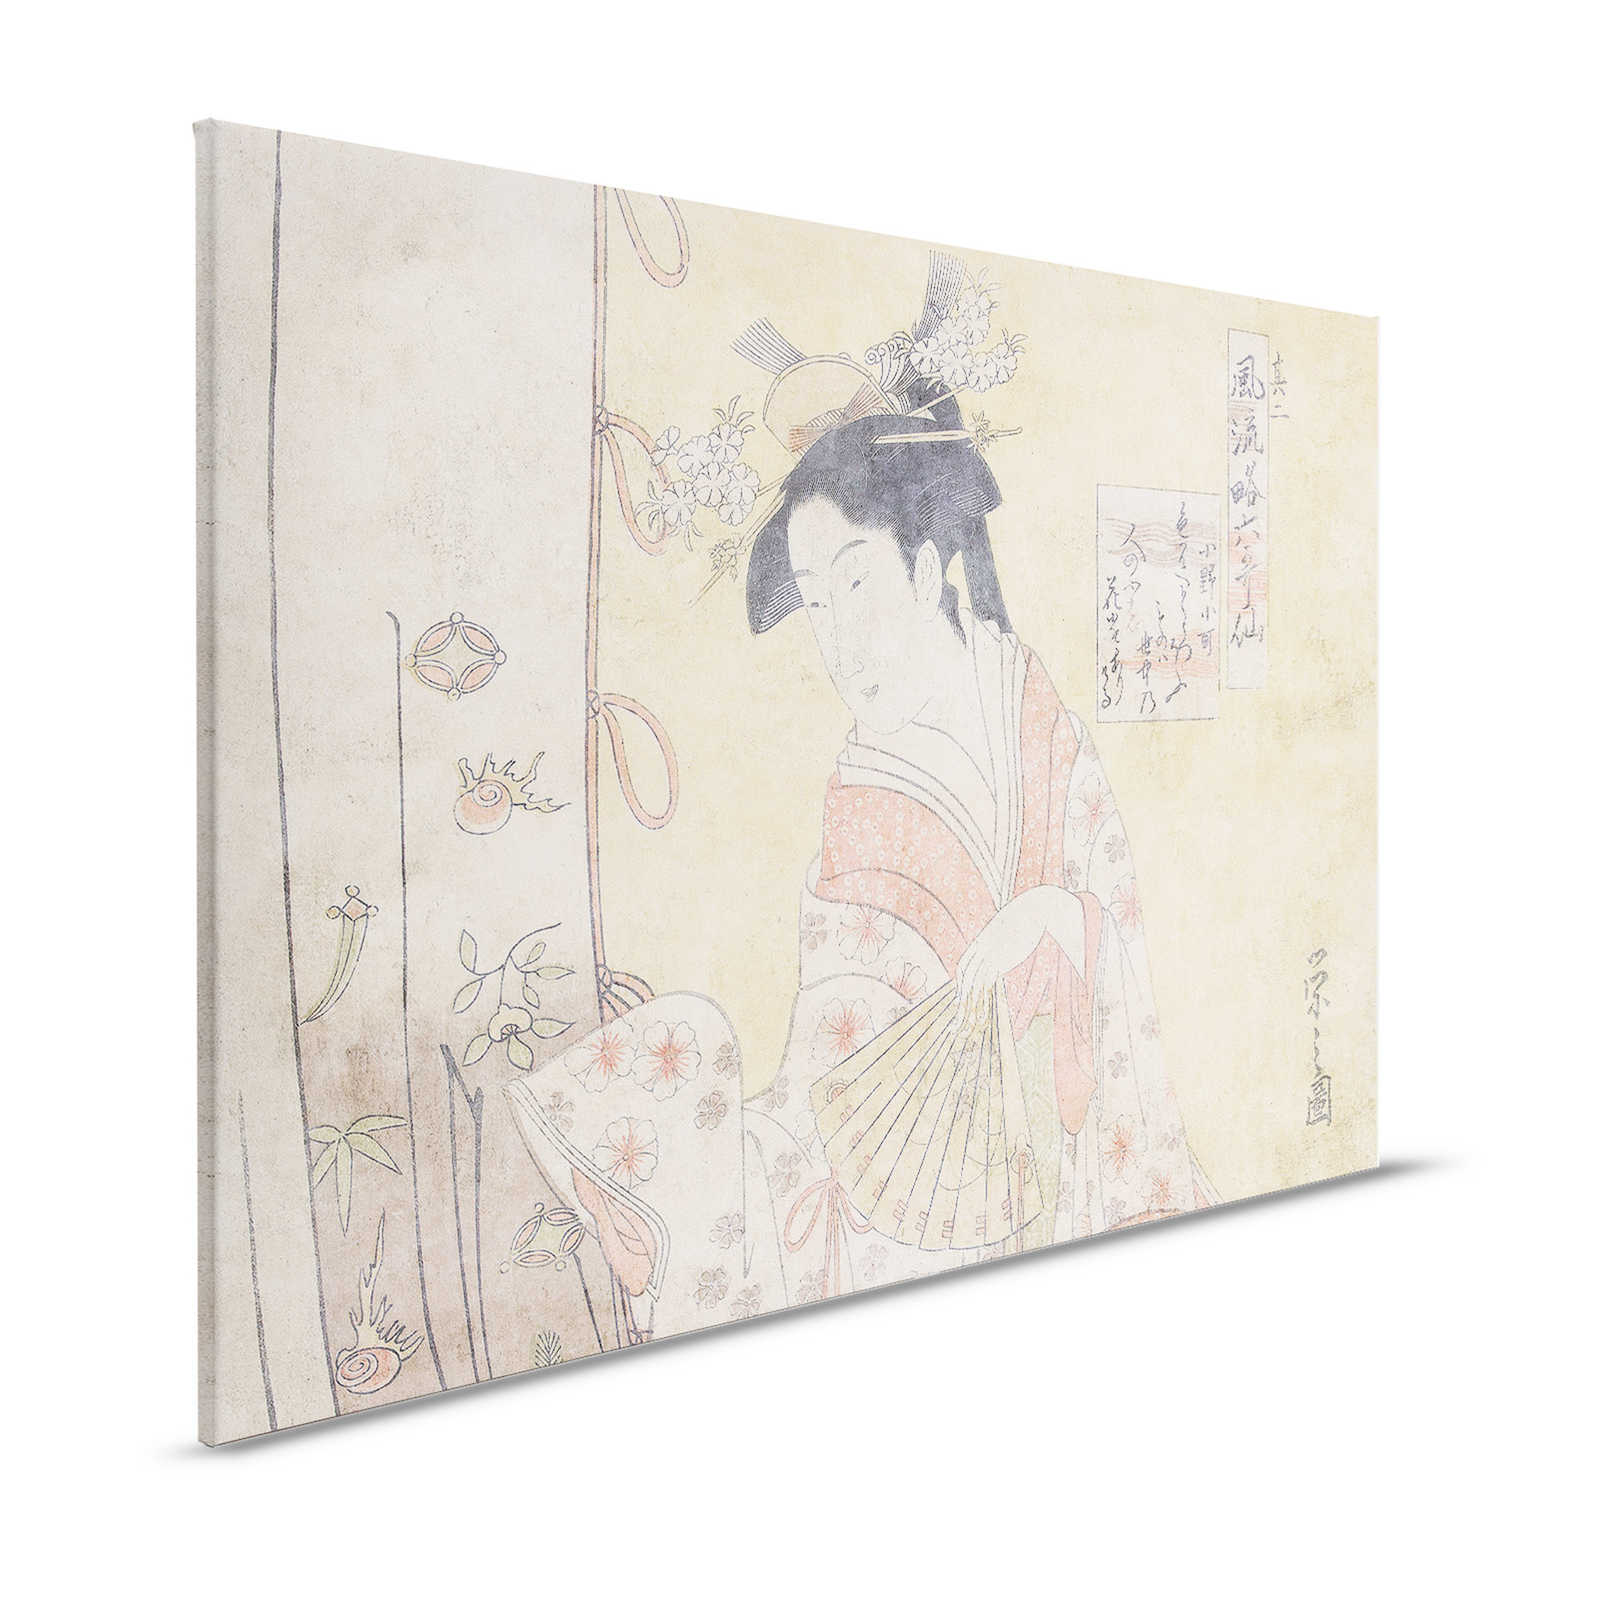 Osaka 2 - Asia Quadro su tela d'arte vintage Signora con ventaglio - 1,20 m x 0,80 m
